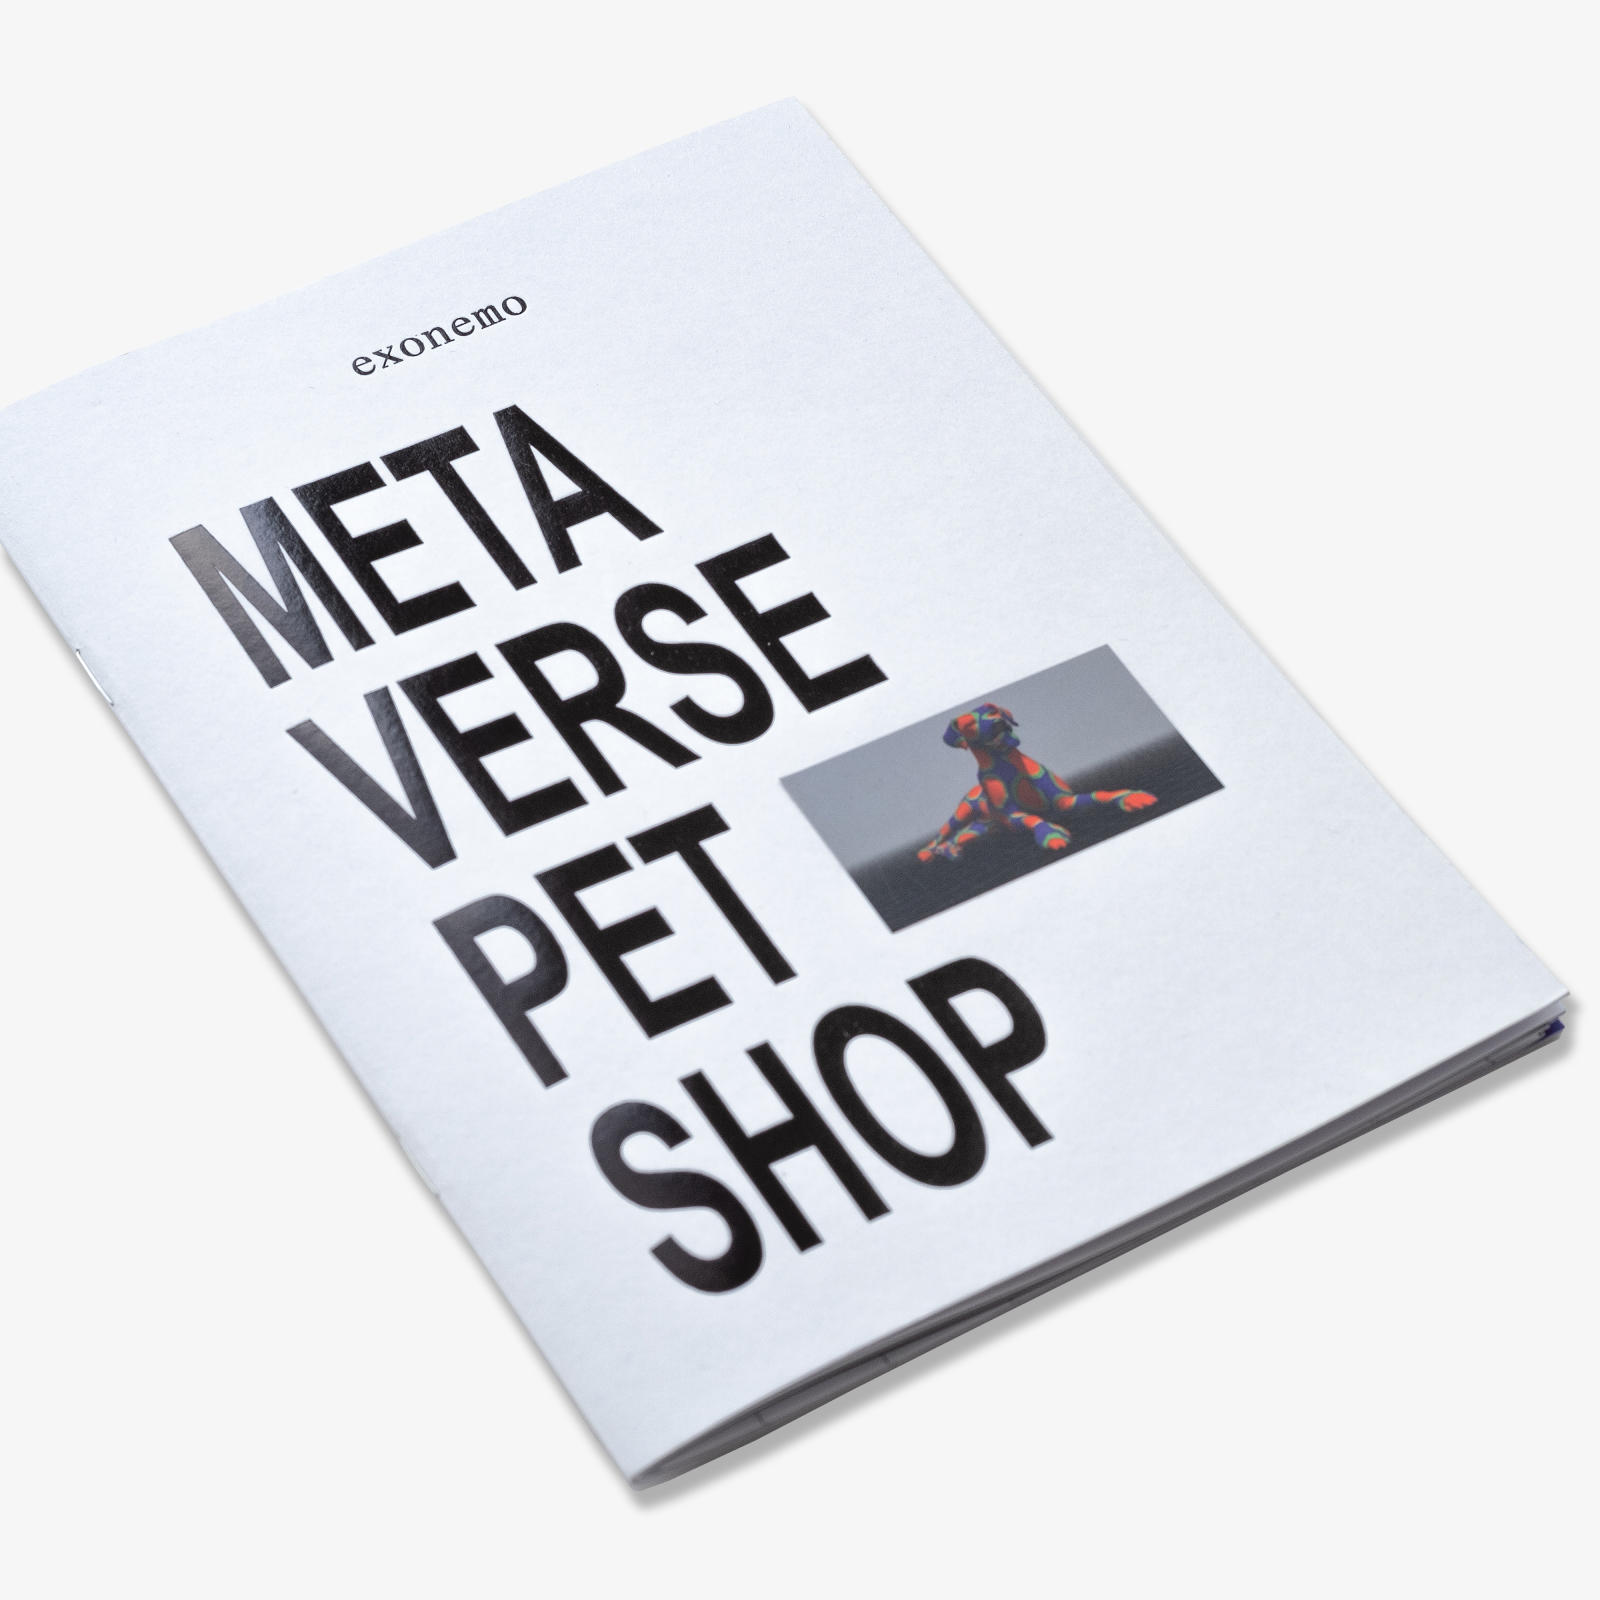 Metaverse-Petshot-Booklet-2022-08